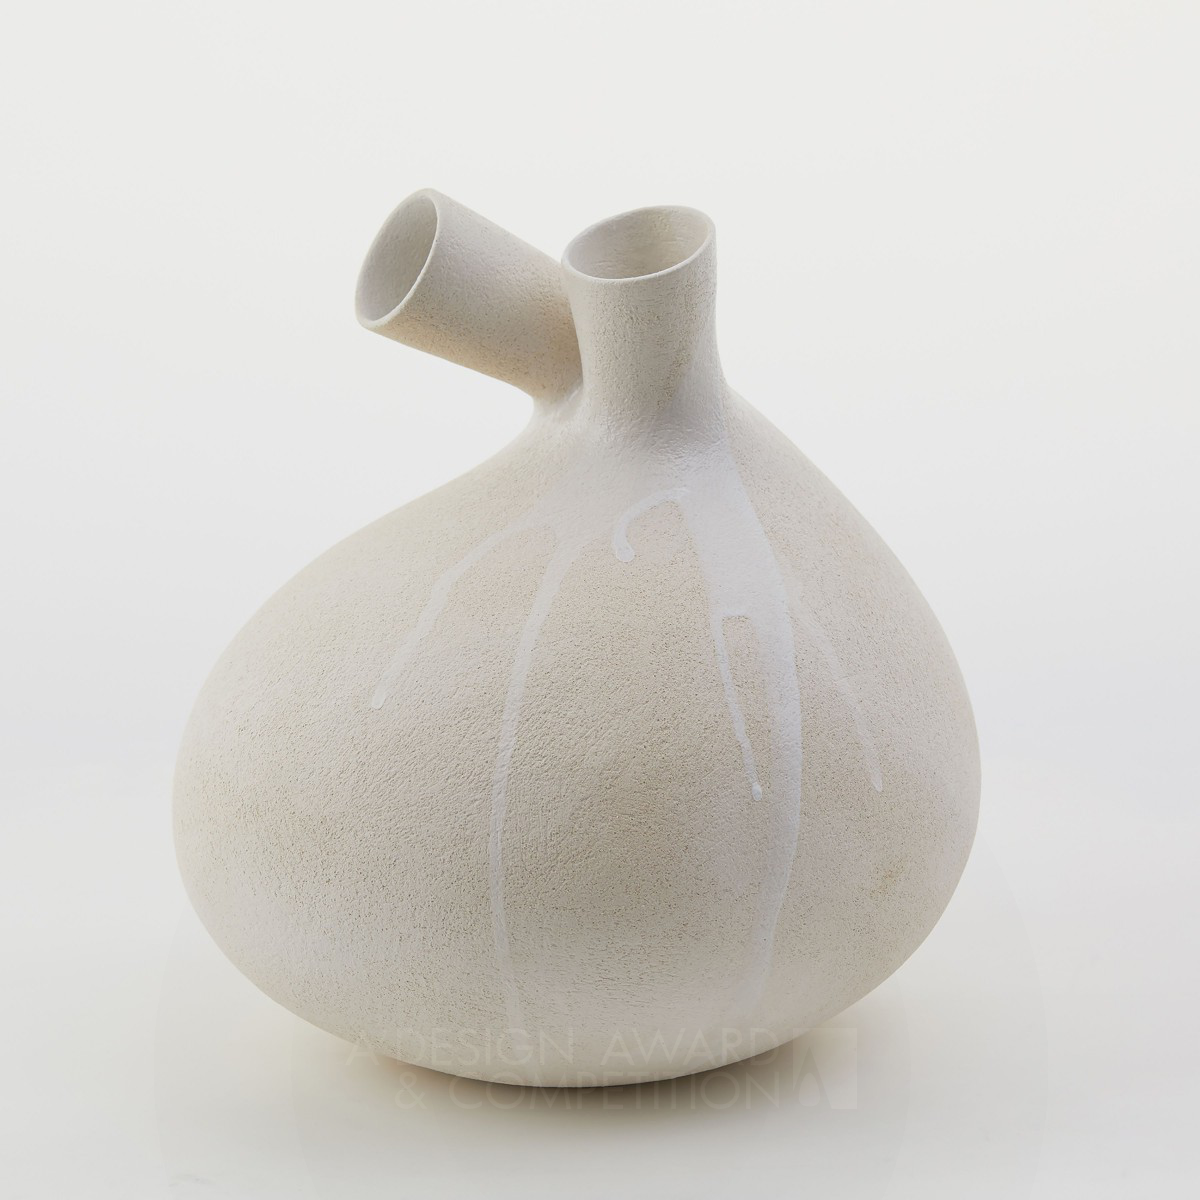 Throbbing Stillness: Eine einzigartige skulpturale Vase, die zur Reflexion einlädt